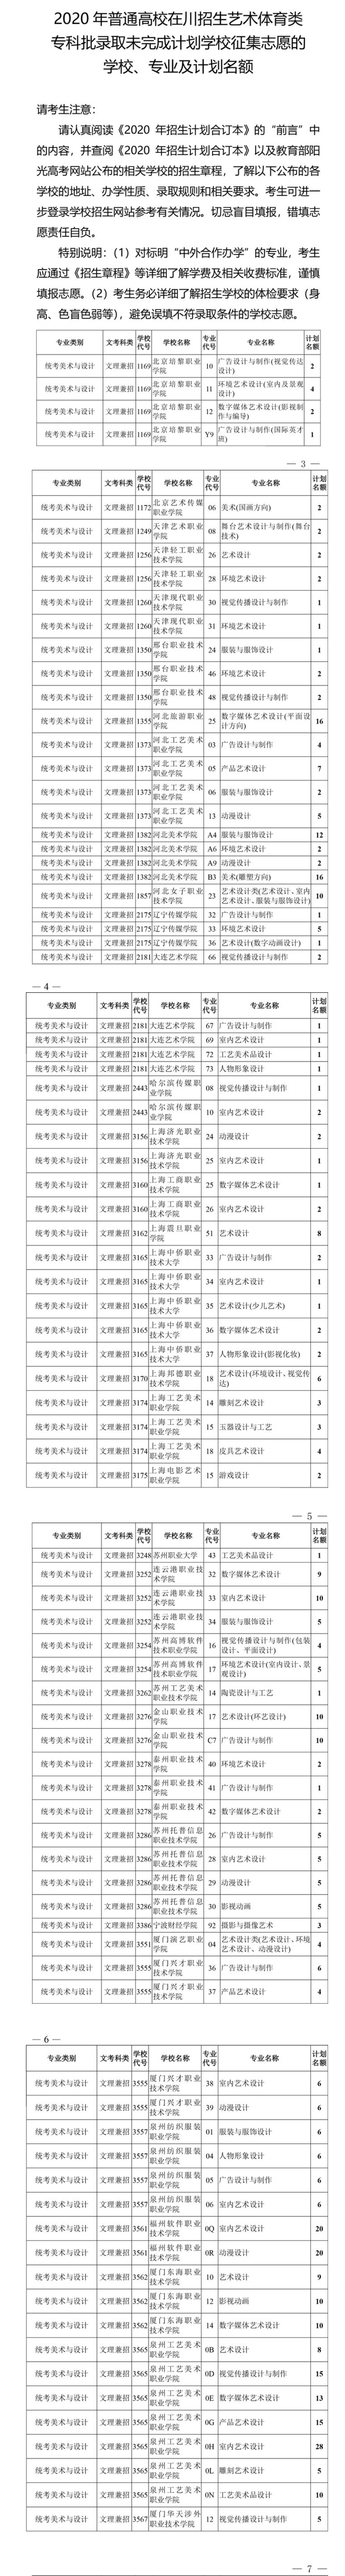 关于四川省2020年普通高校招生艺术体育类专科批录取未完成计划学校征集志愿的通知